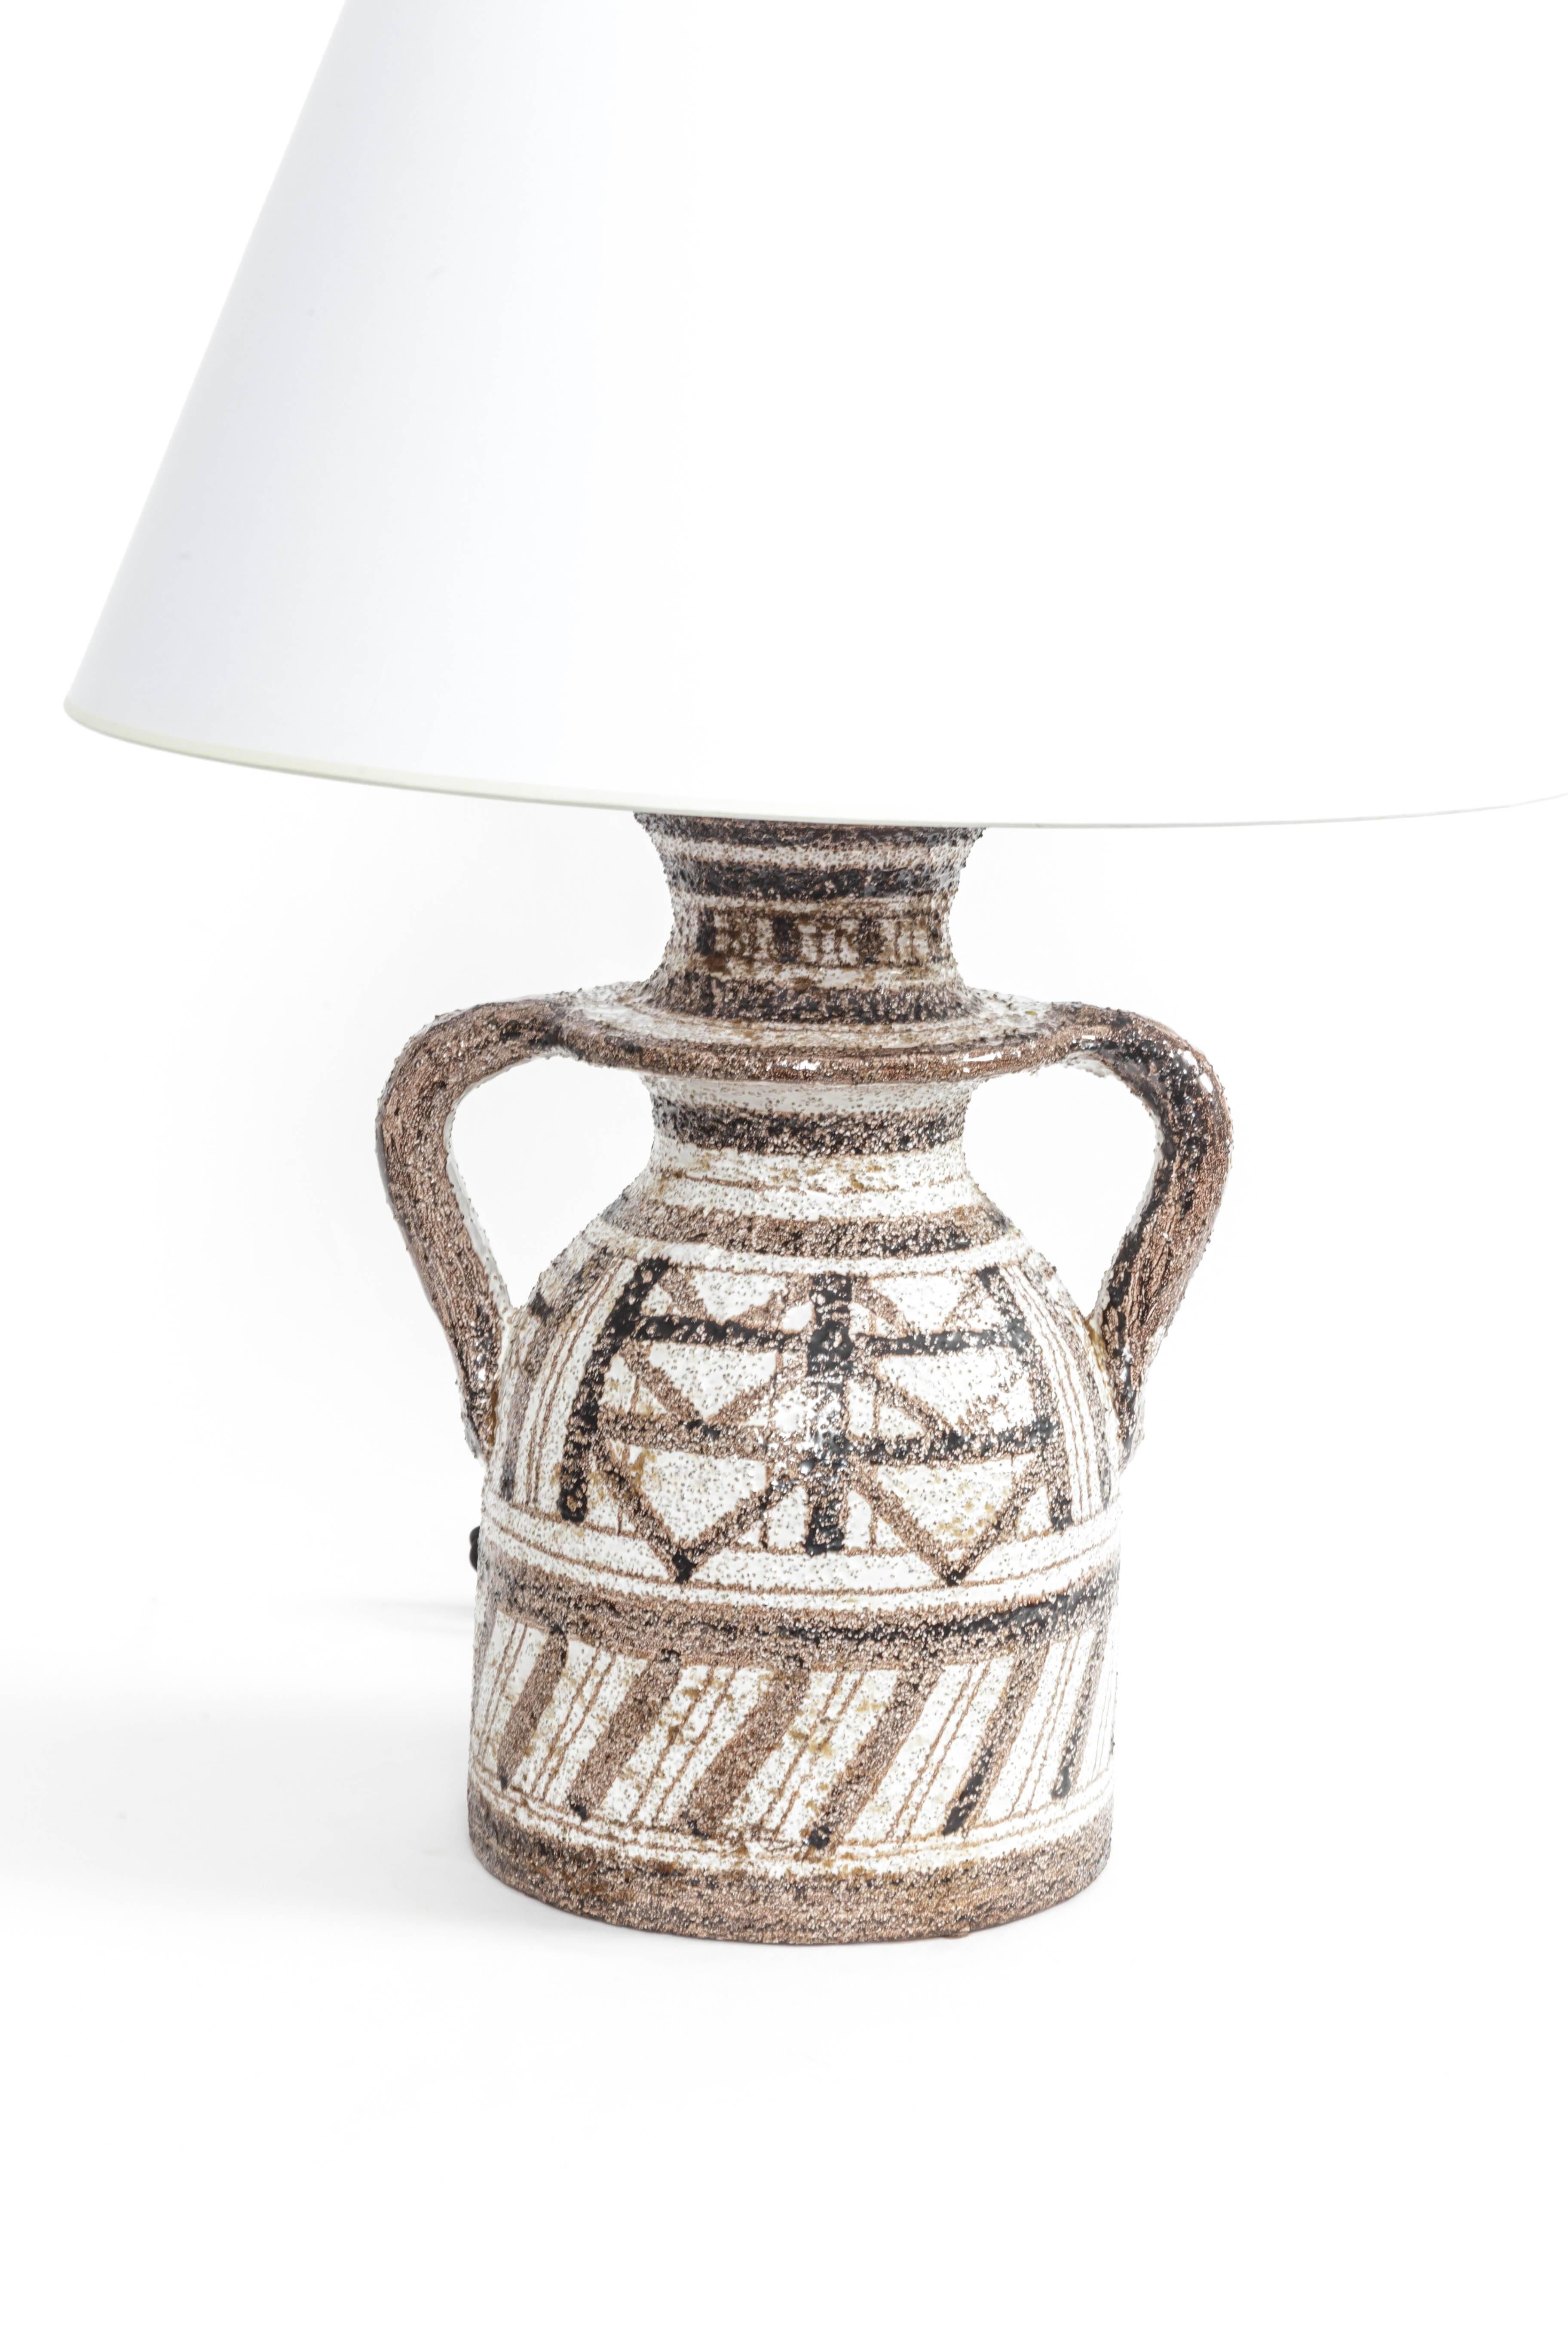 Italian Rosenthal Netter Graphic Textured Table Lamp